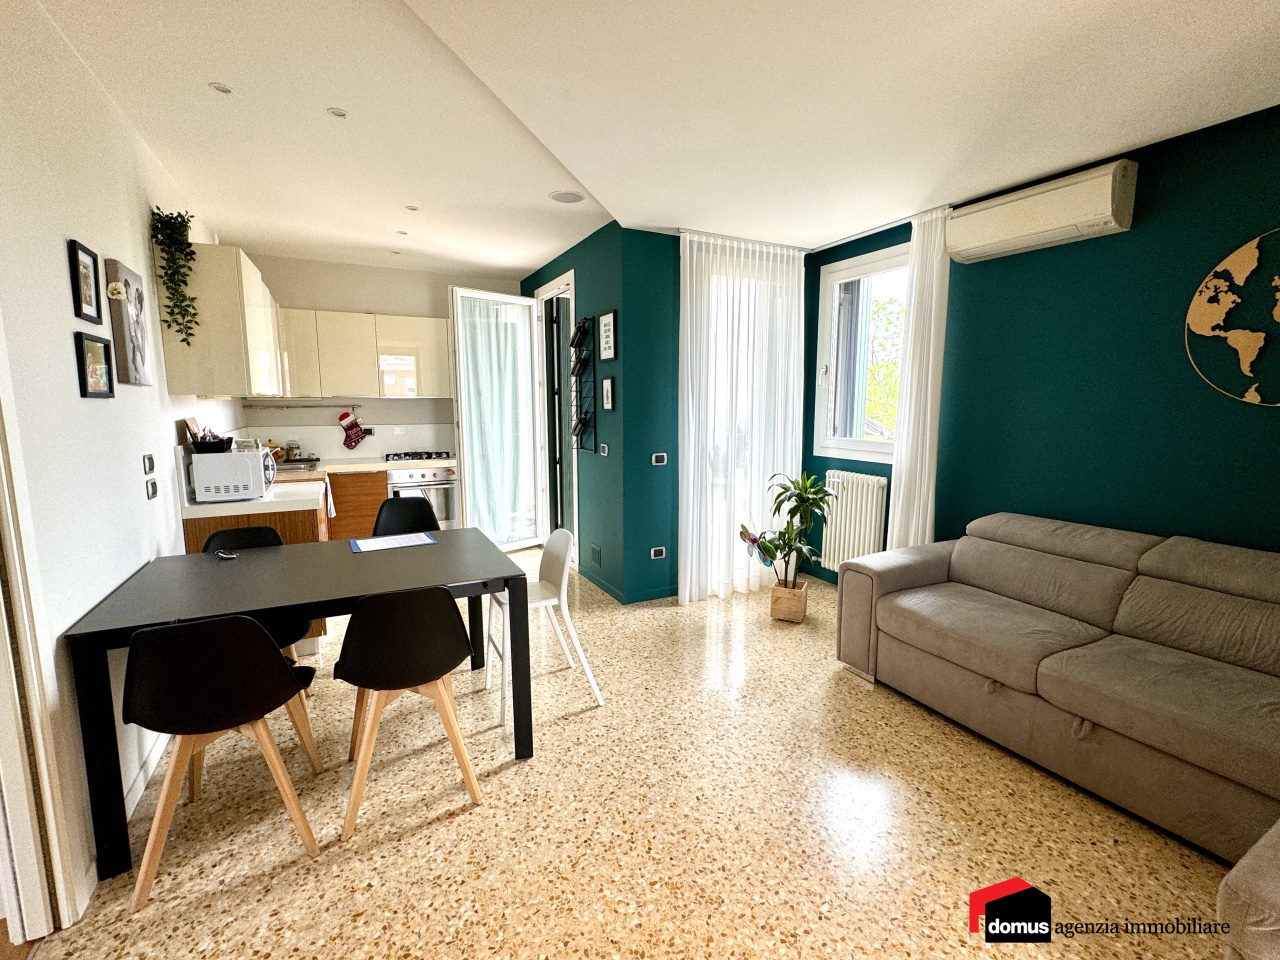 Appartamento in vendita a Thiene, 3 locali, prezzo € 135.000 | PortaleAgenzieImmobiliari.it